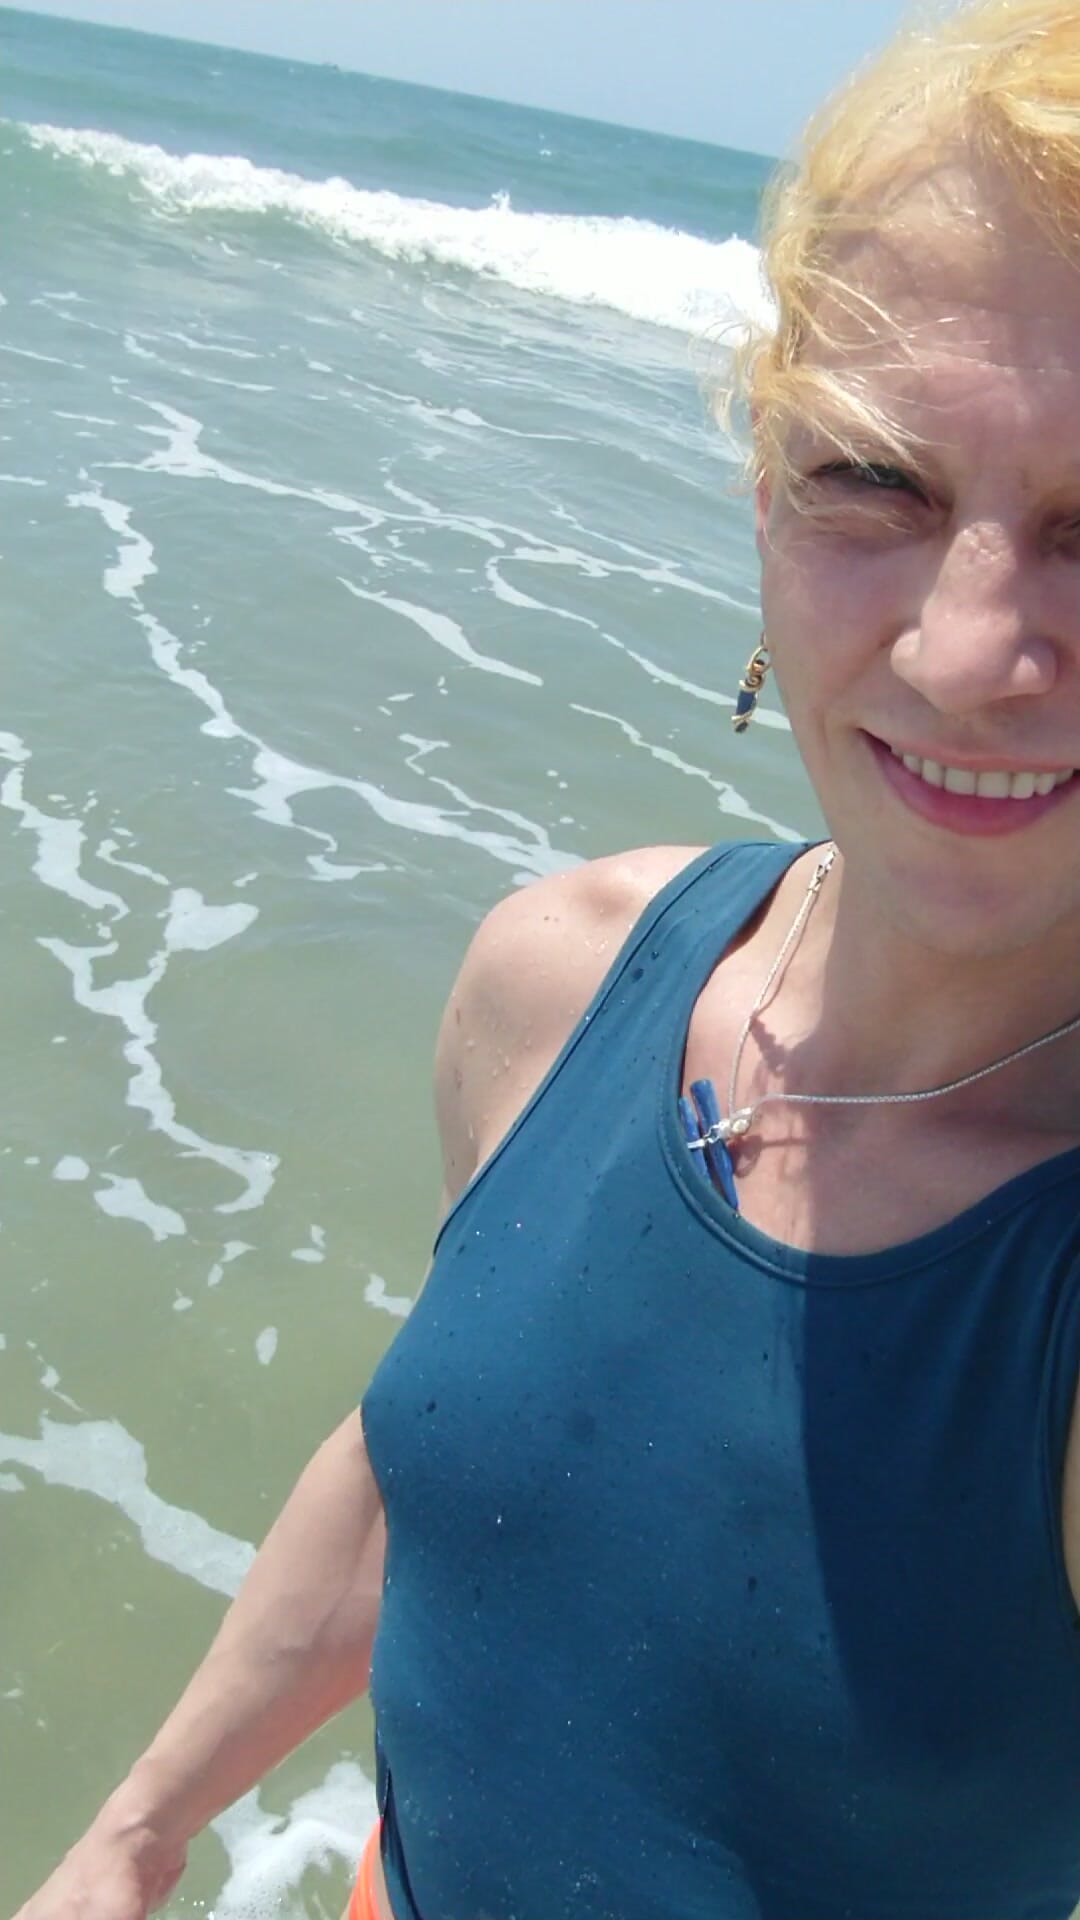 Transgirl che nuota in mutandine rosse e maglietta blu nell'oceano Pacifico la prima volta. Godendo il sole e la stagione calda. Tette bagnate in maglietta.